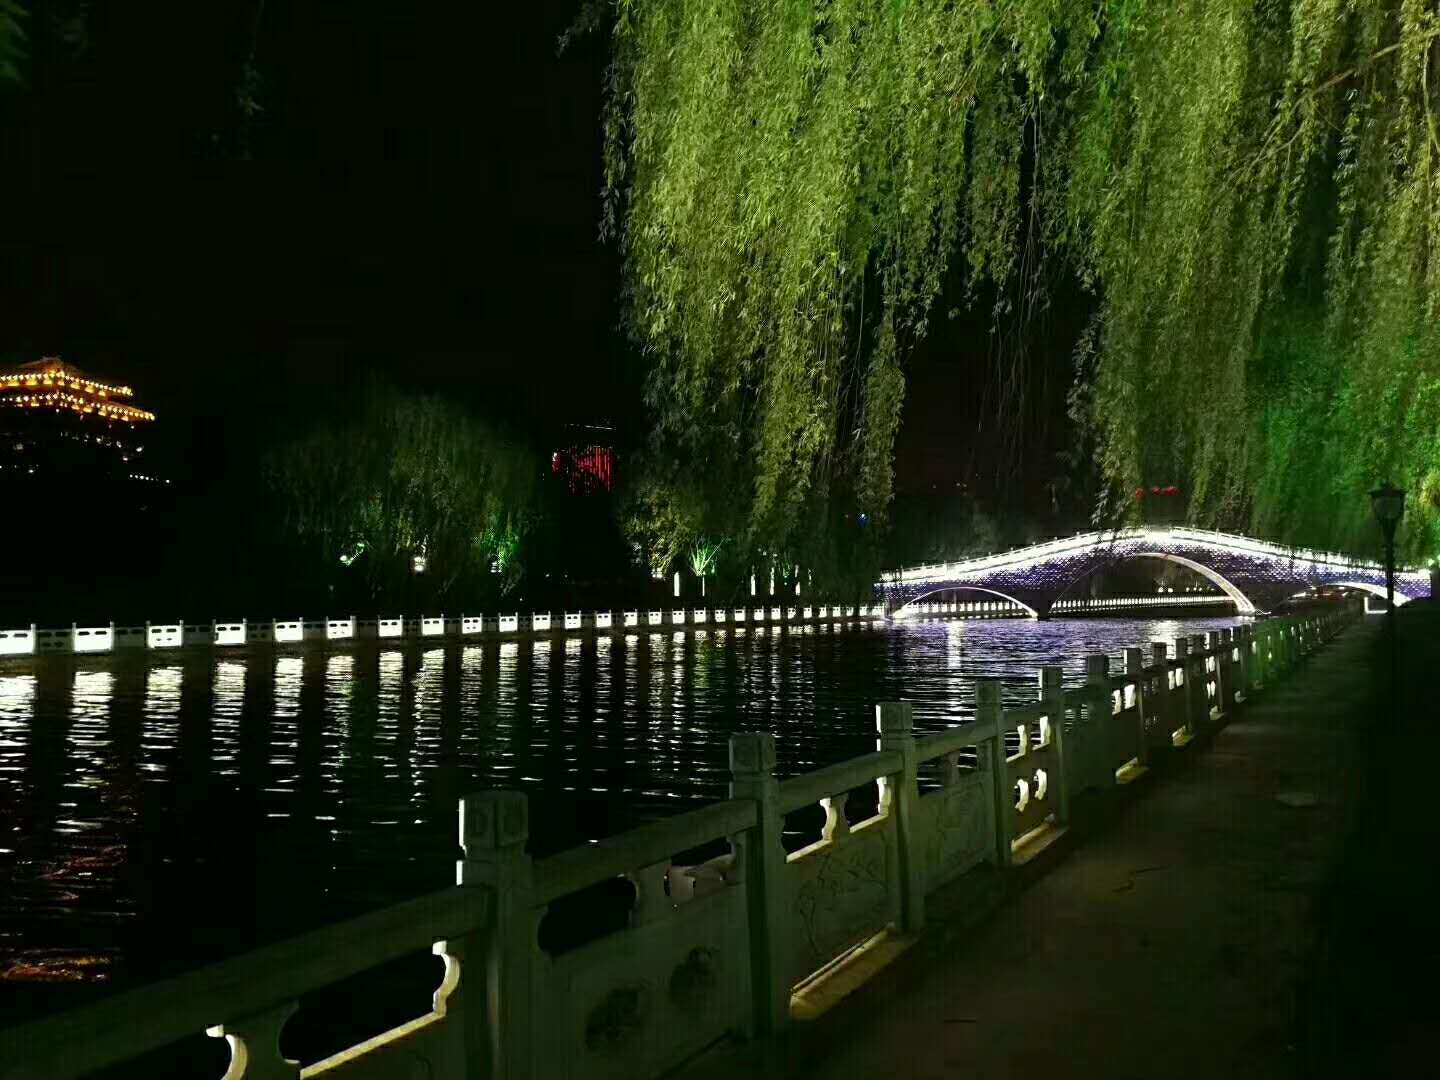 Henan-Xuchang Qingming River